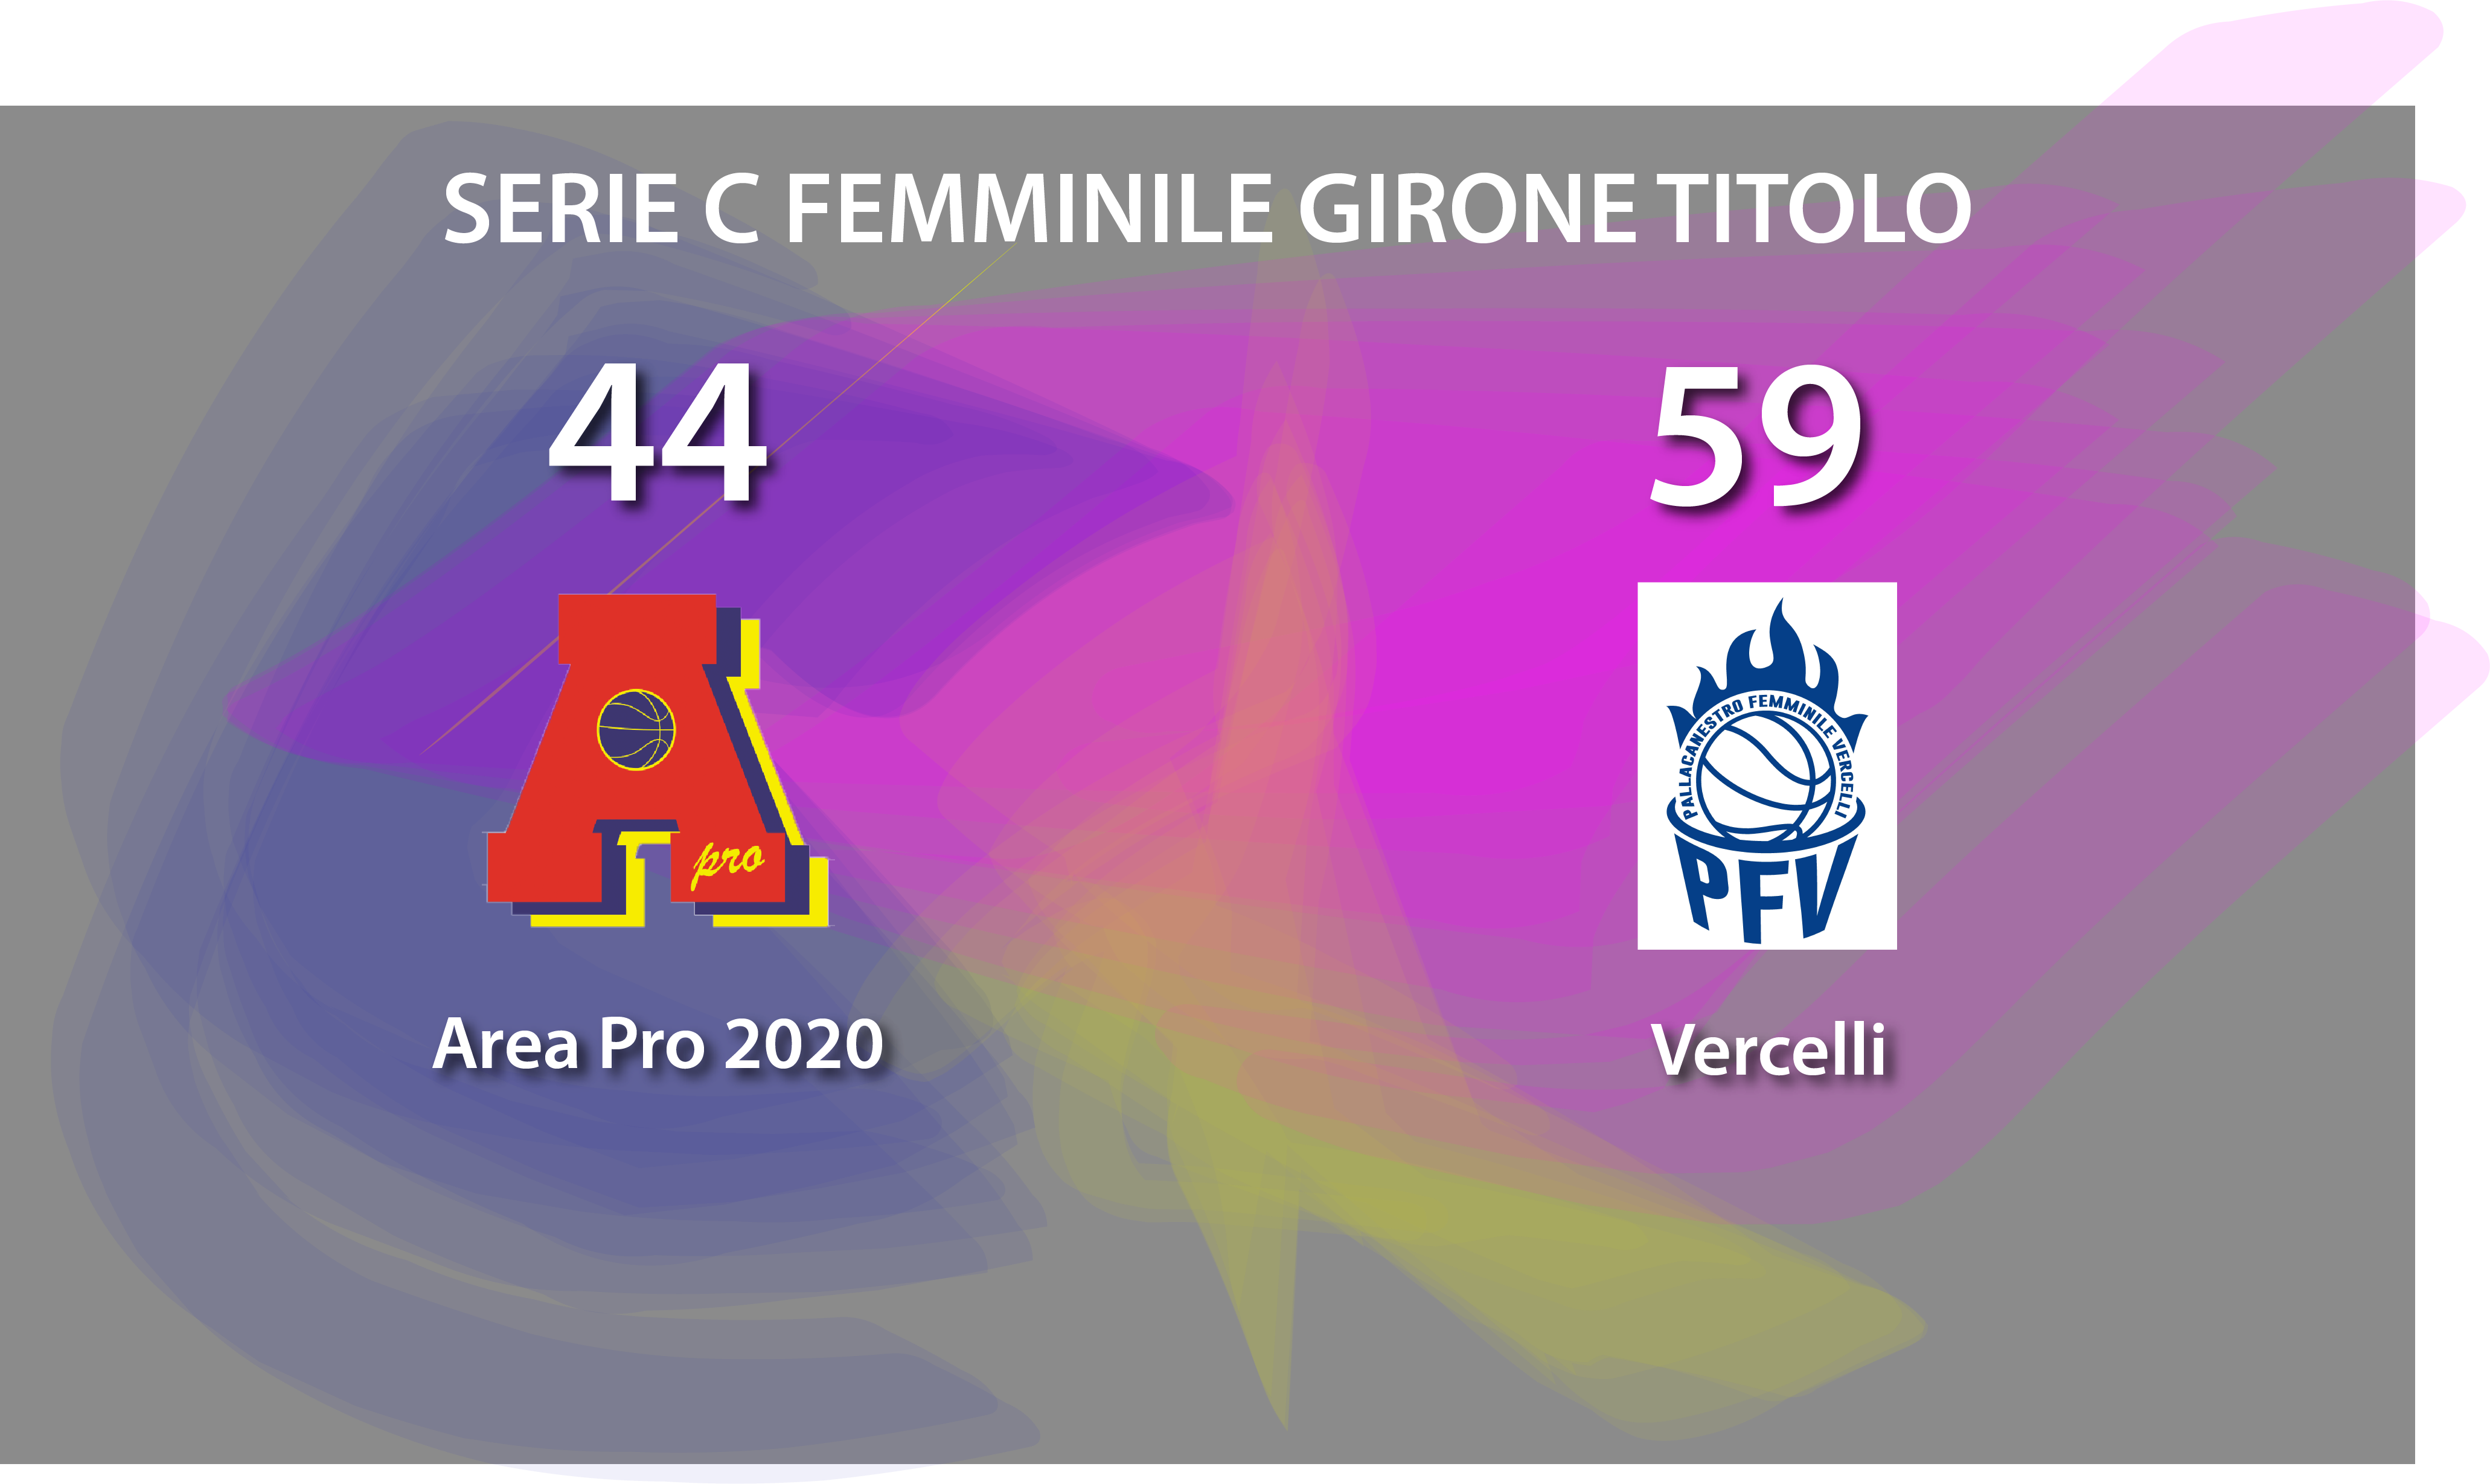 Serie C femminile: Vercelli espugna il Palasangone e vince con AreaPro2020